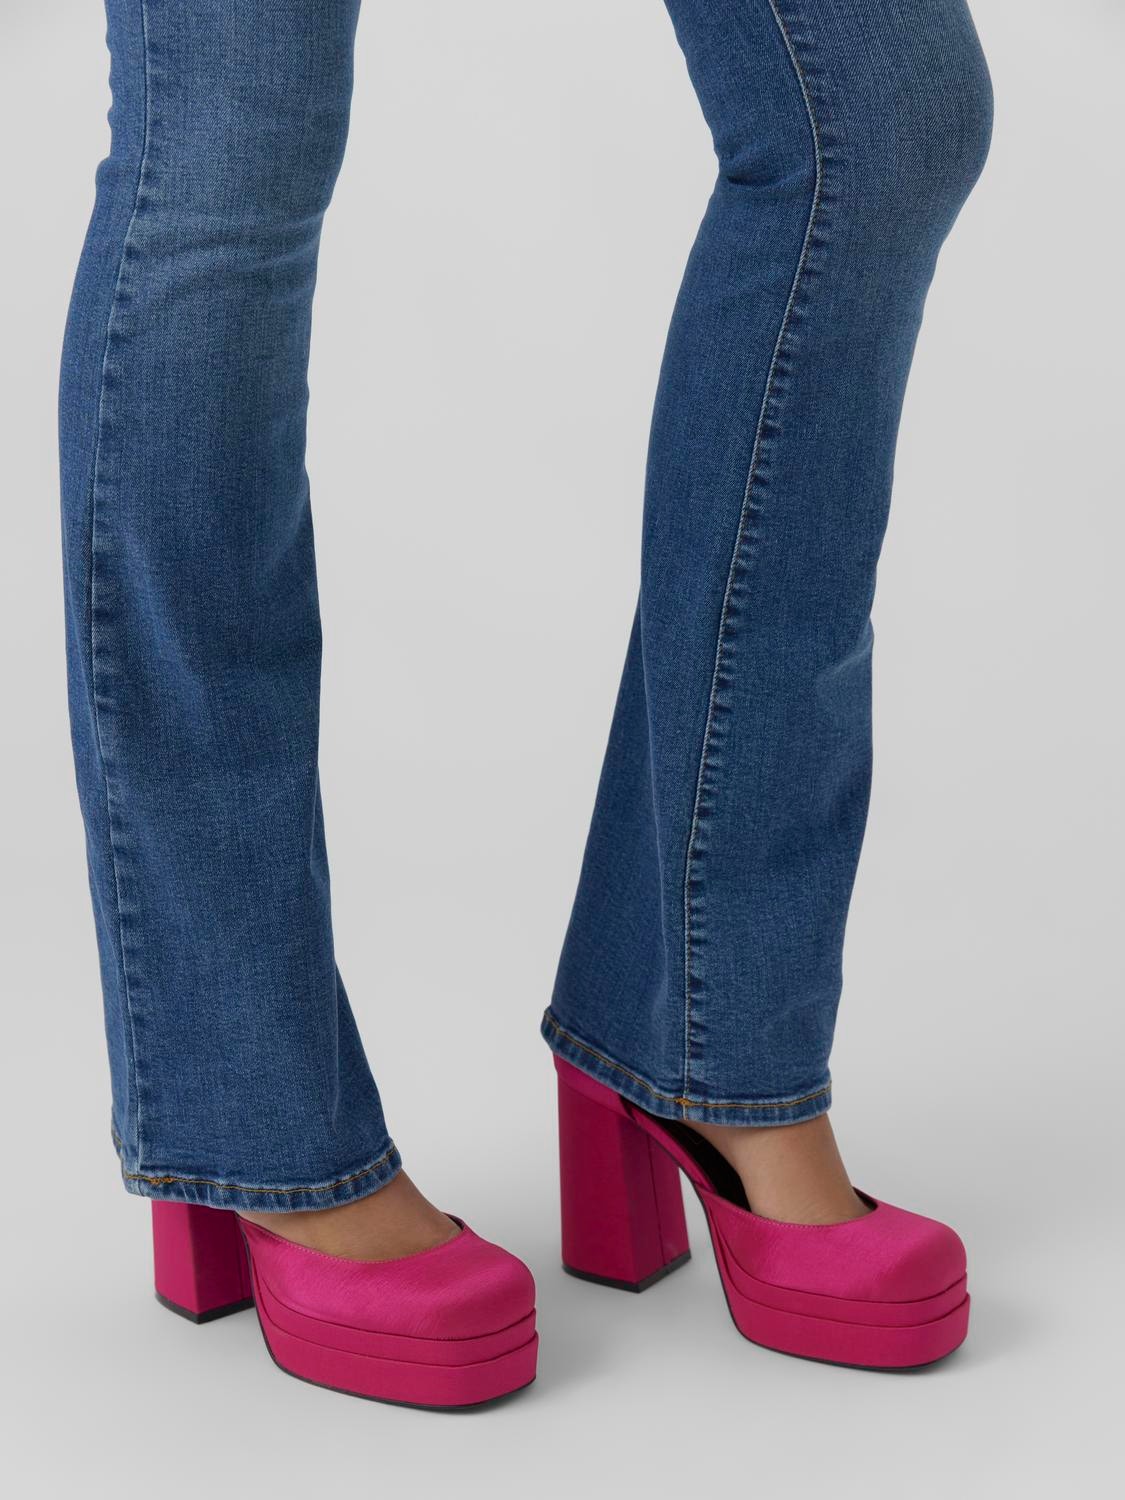 Vero Moda VMSIGA Utsvängd passform Jeans -Medium Blue Denim - 10279225